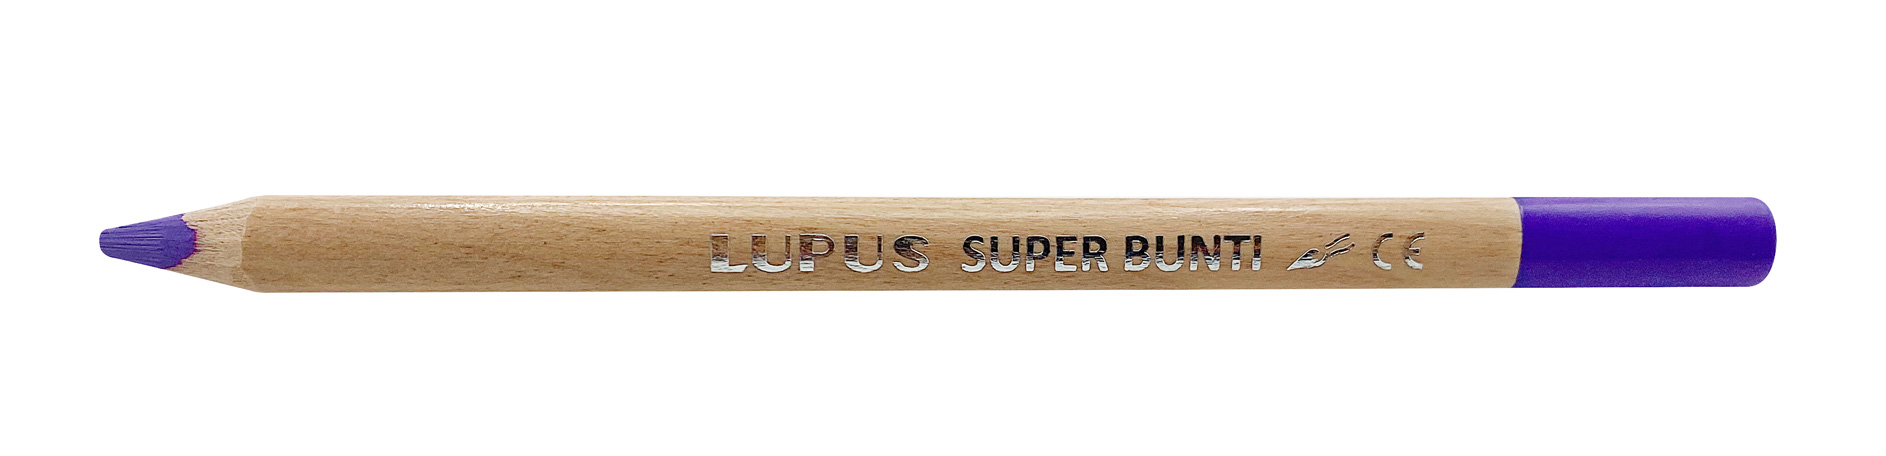 LUPUS Super-Bunti - Einzelfarben